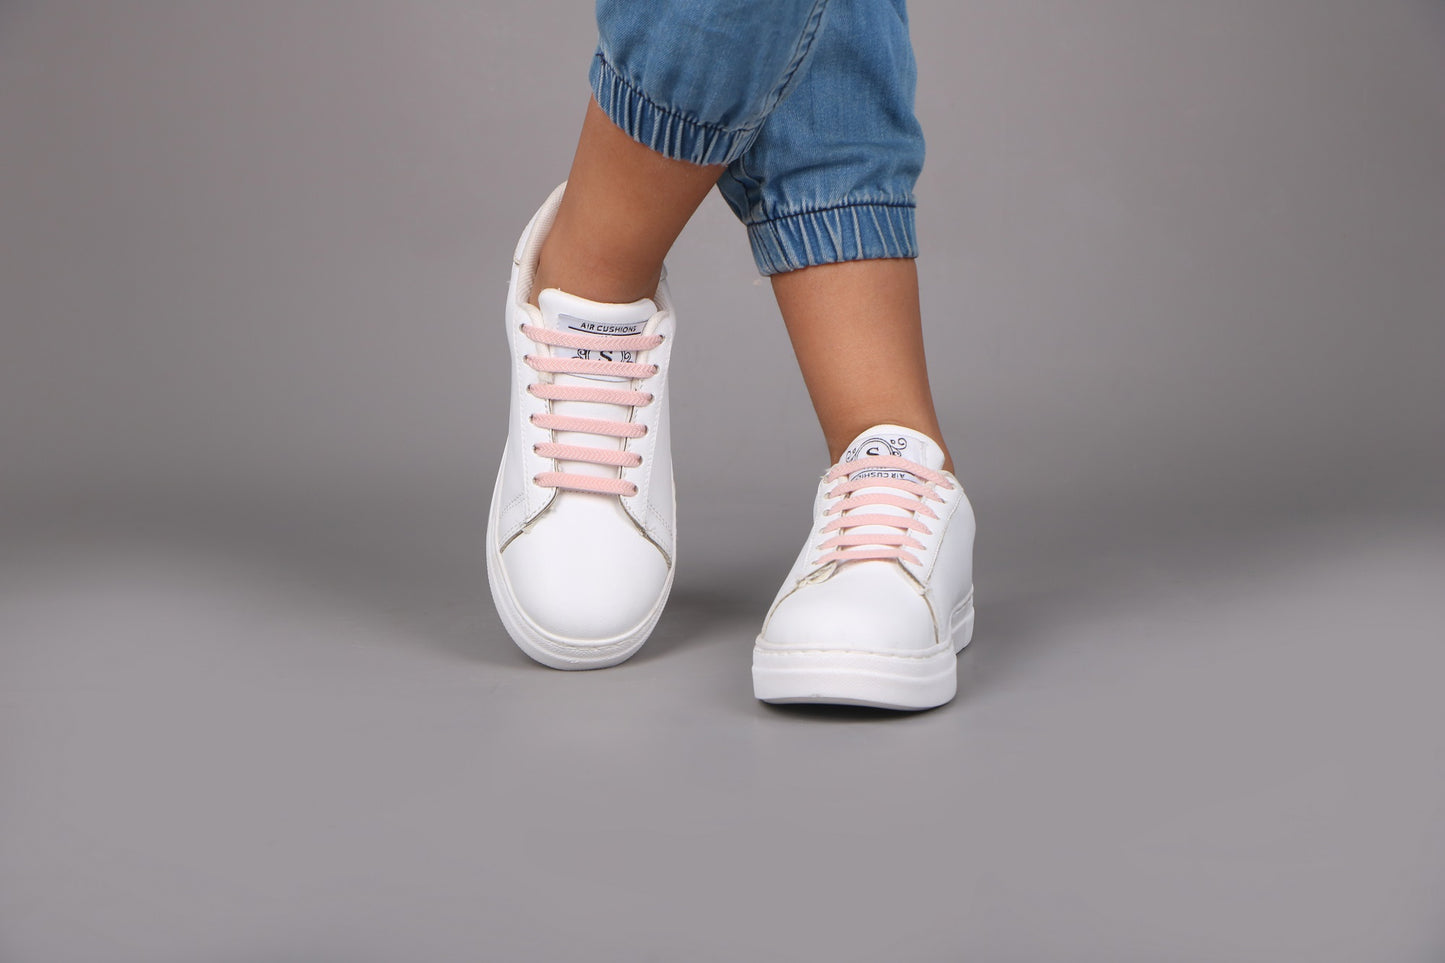 Kids's Sneakers - 2705